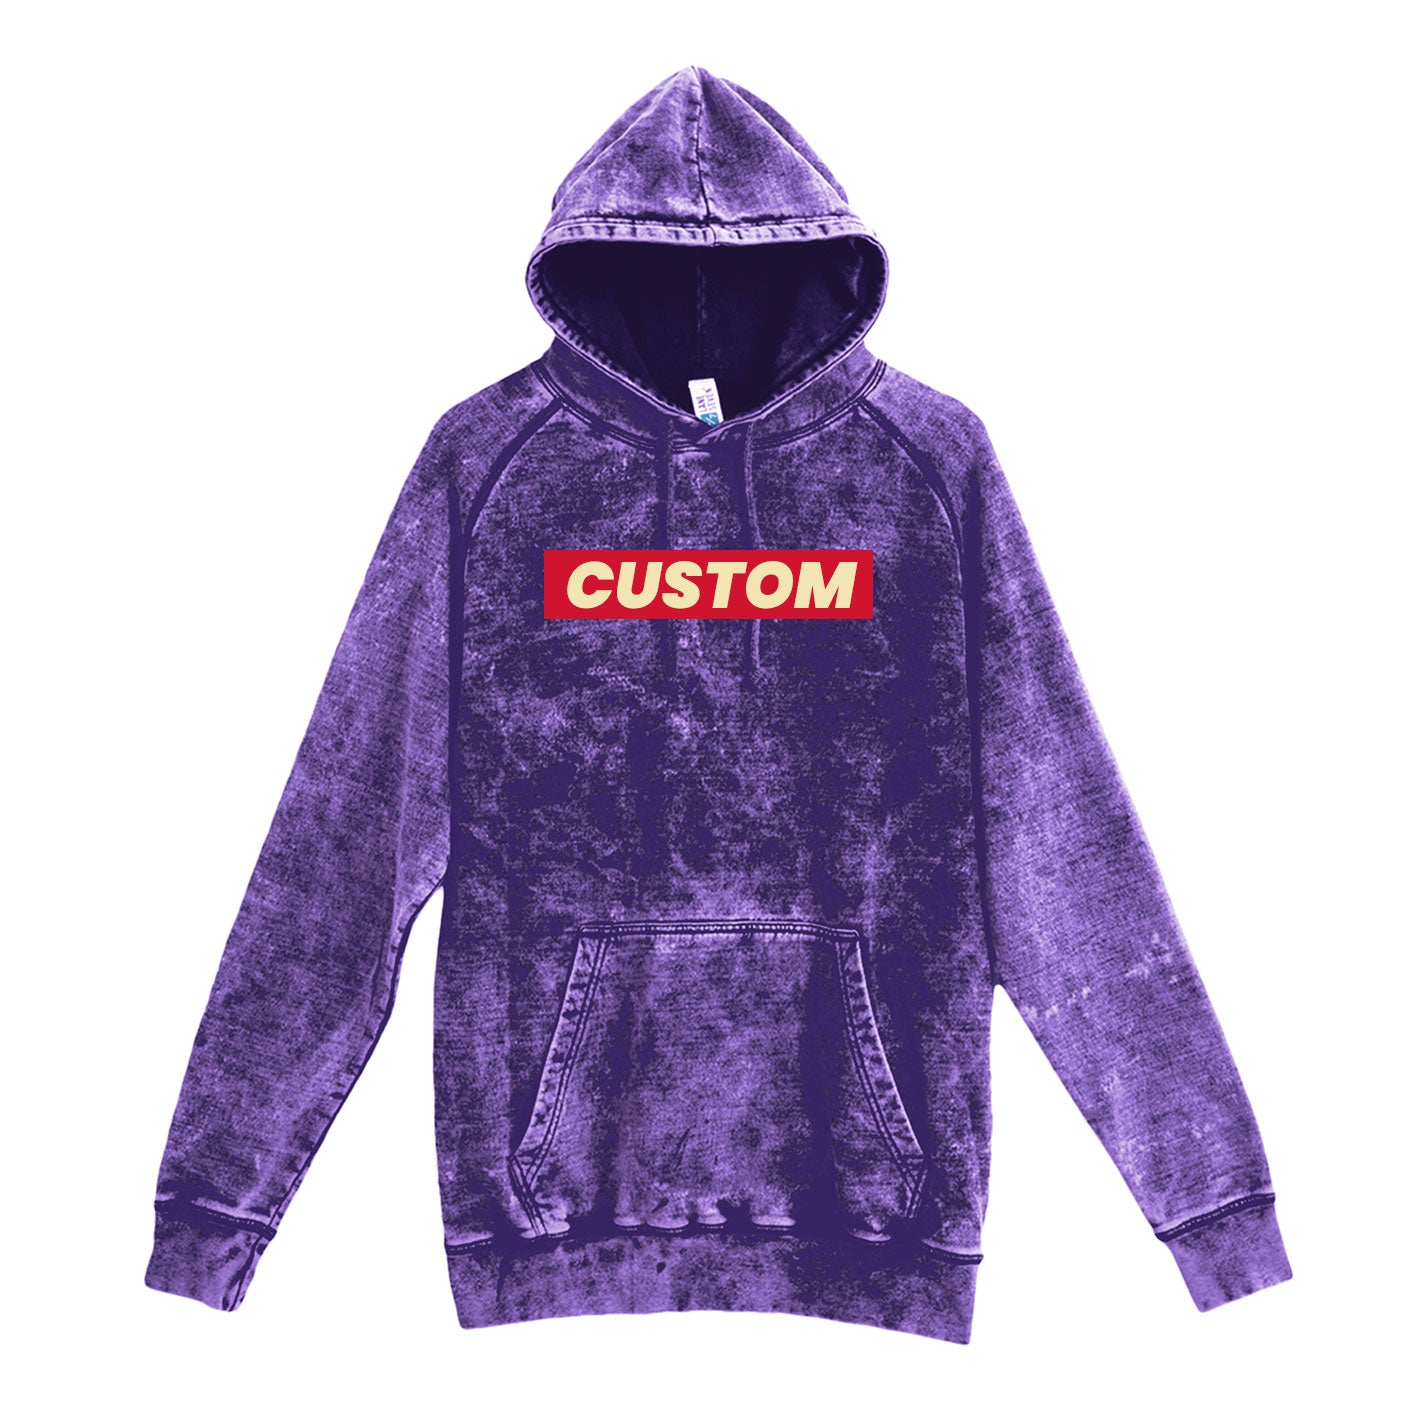 custom vintage hoodies in purple